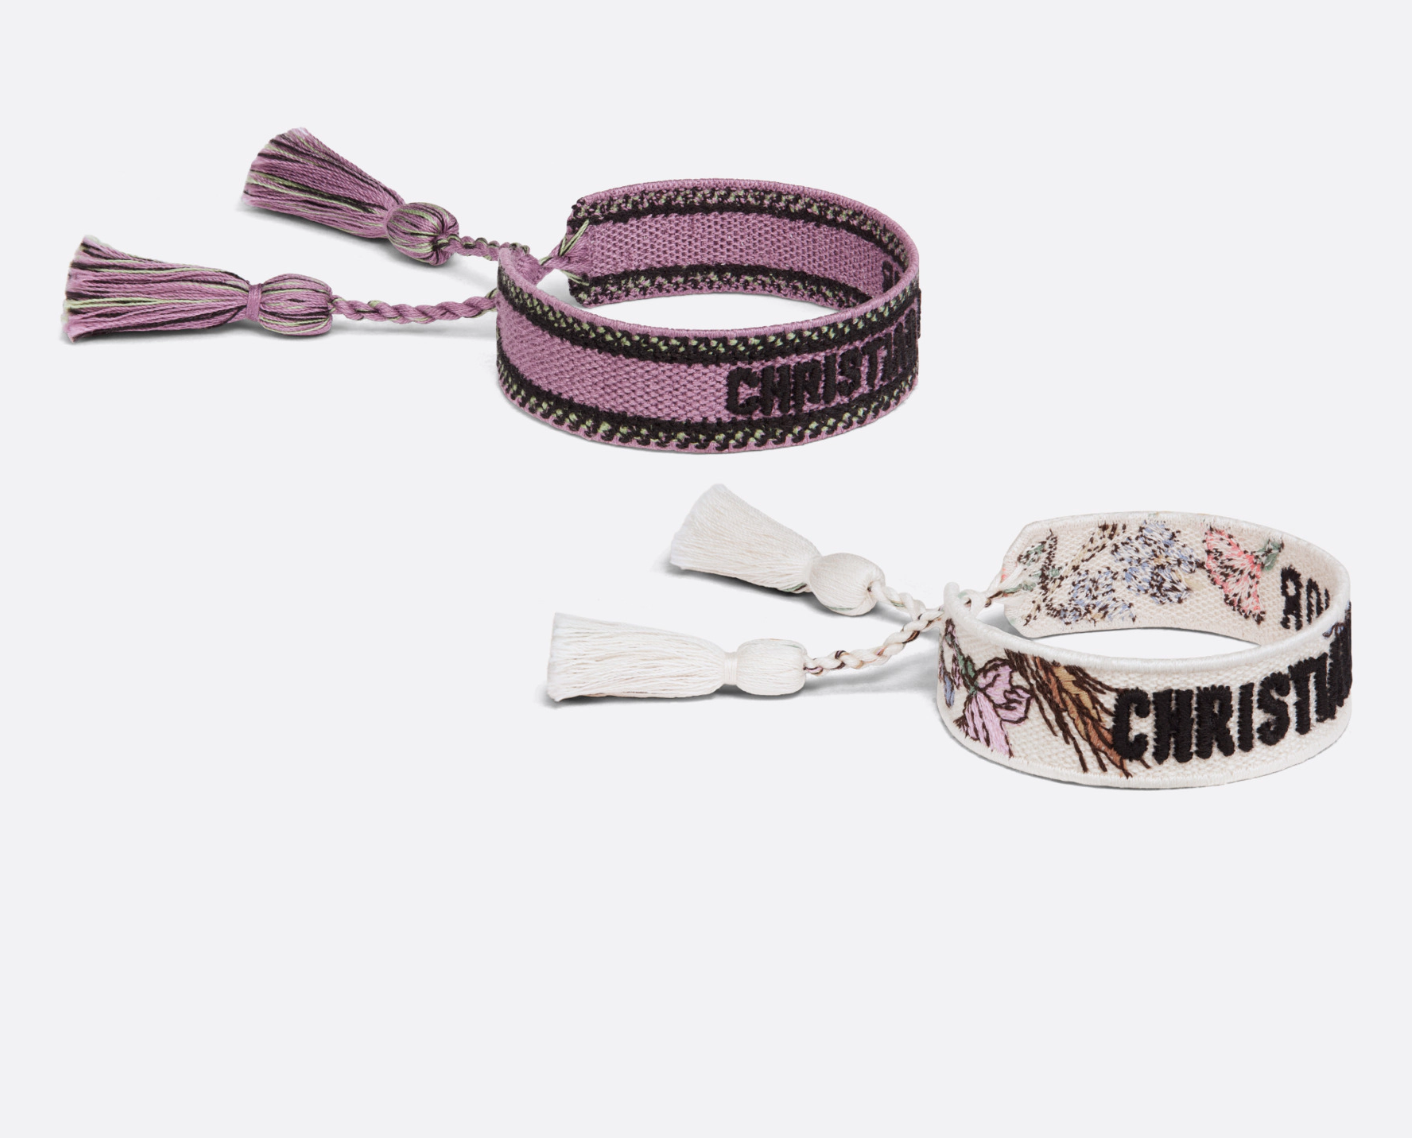 Christian Dior Inspired Handwoven Friendship Bracelet